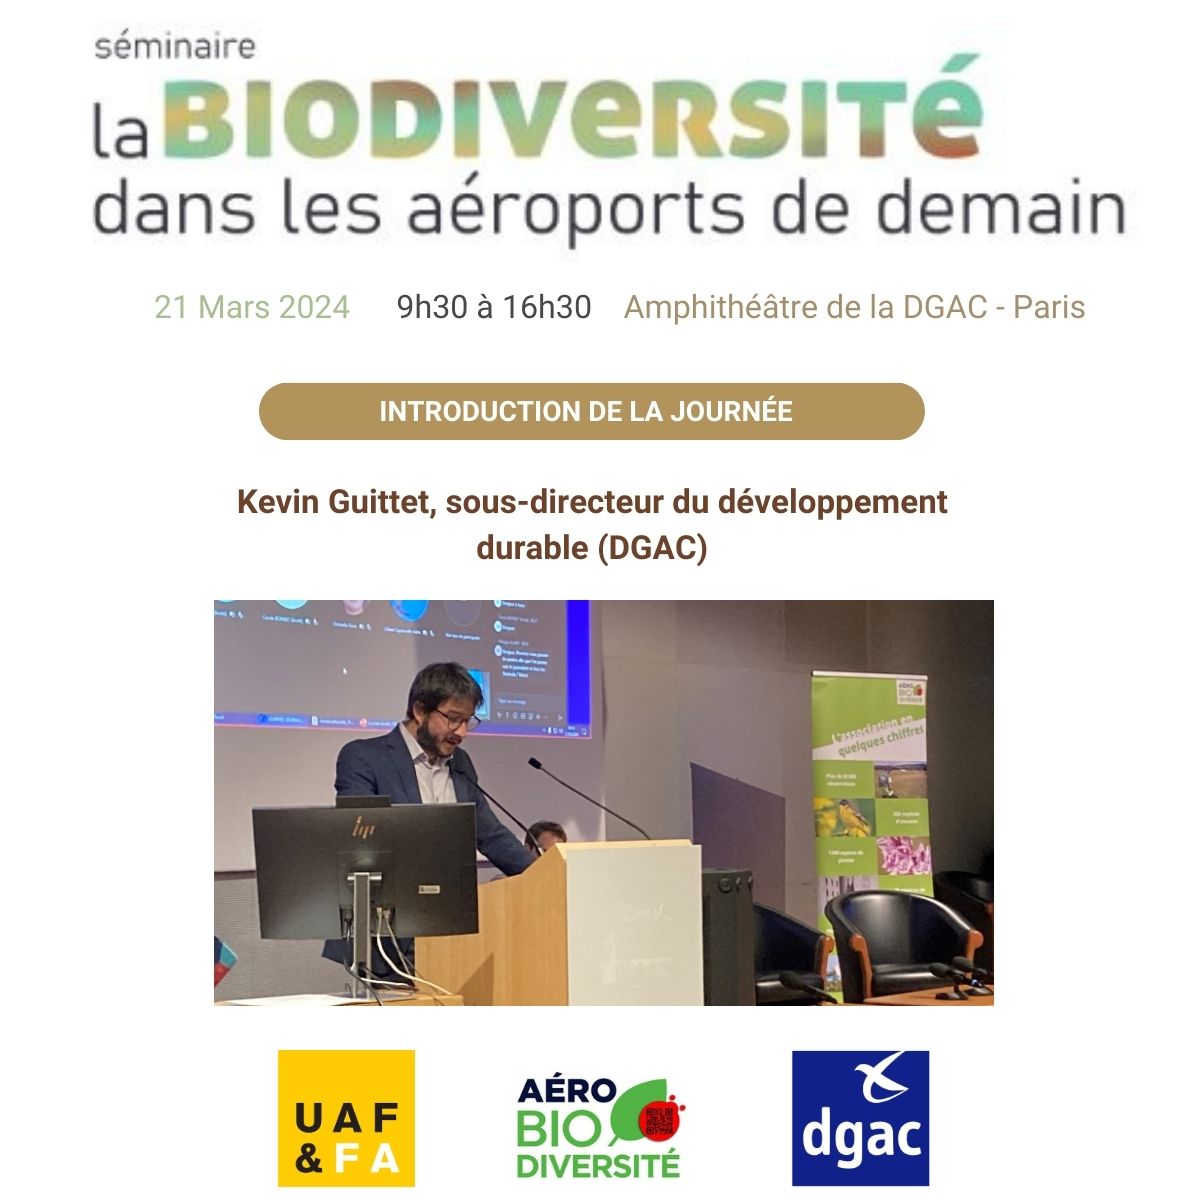 📢Lancement du séminaire sur 'La biodiversité dans les aéroports de demain' organisé par l'association Aéro Biodiversité, la @DGAC et L'@uaf_aeroports par Kevin Guittet, sous-directeur du développement durable (DGAC).